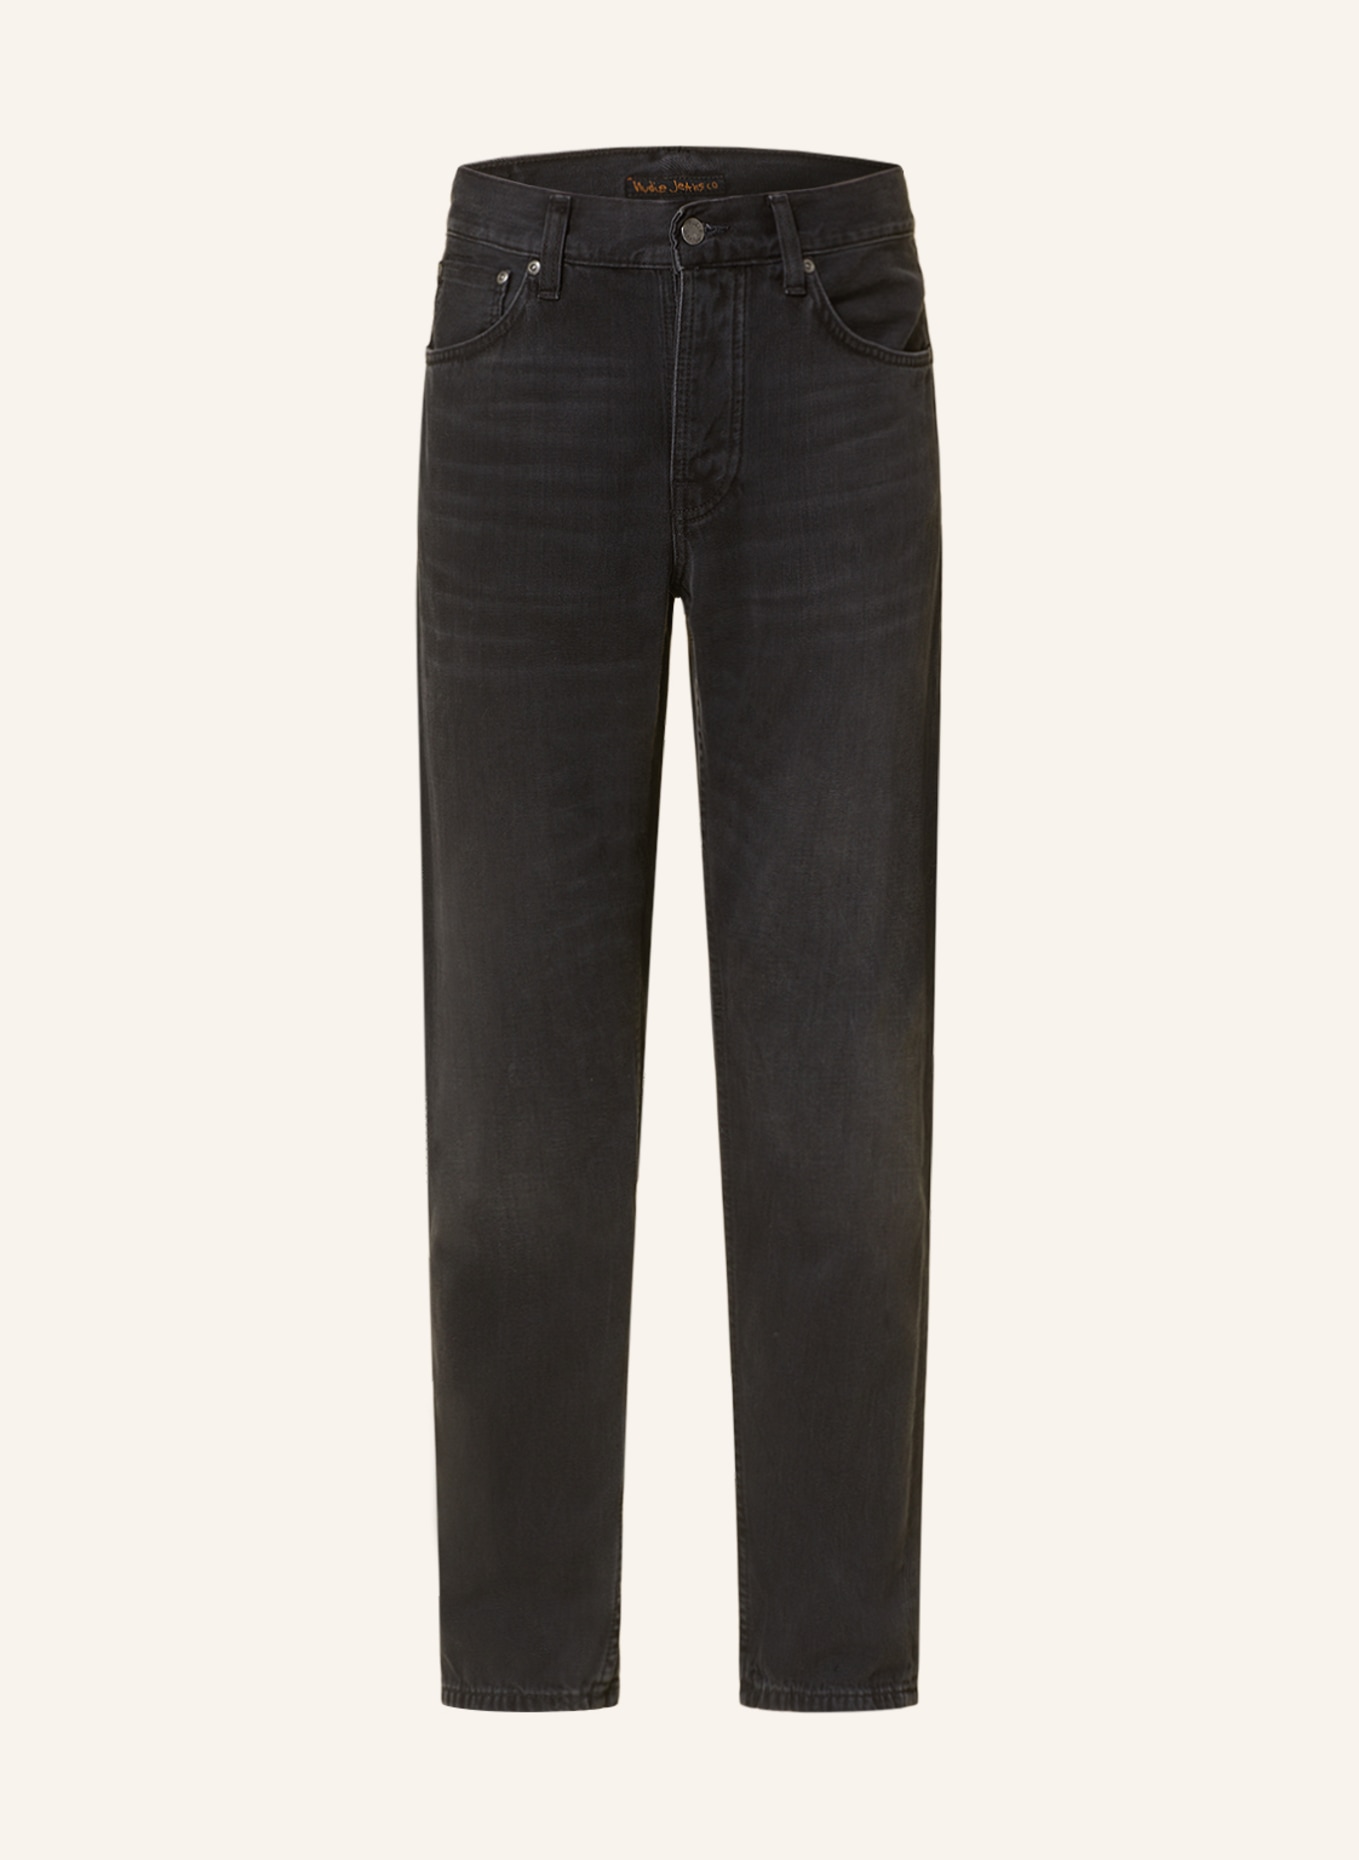 Nudie Jeans Jeans STEADY EDDIE II Tapered Fit, Farbe: Black Change (Bild 1)